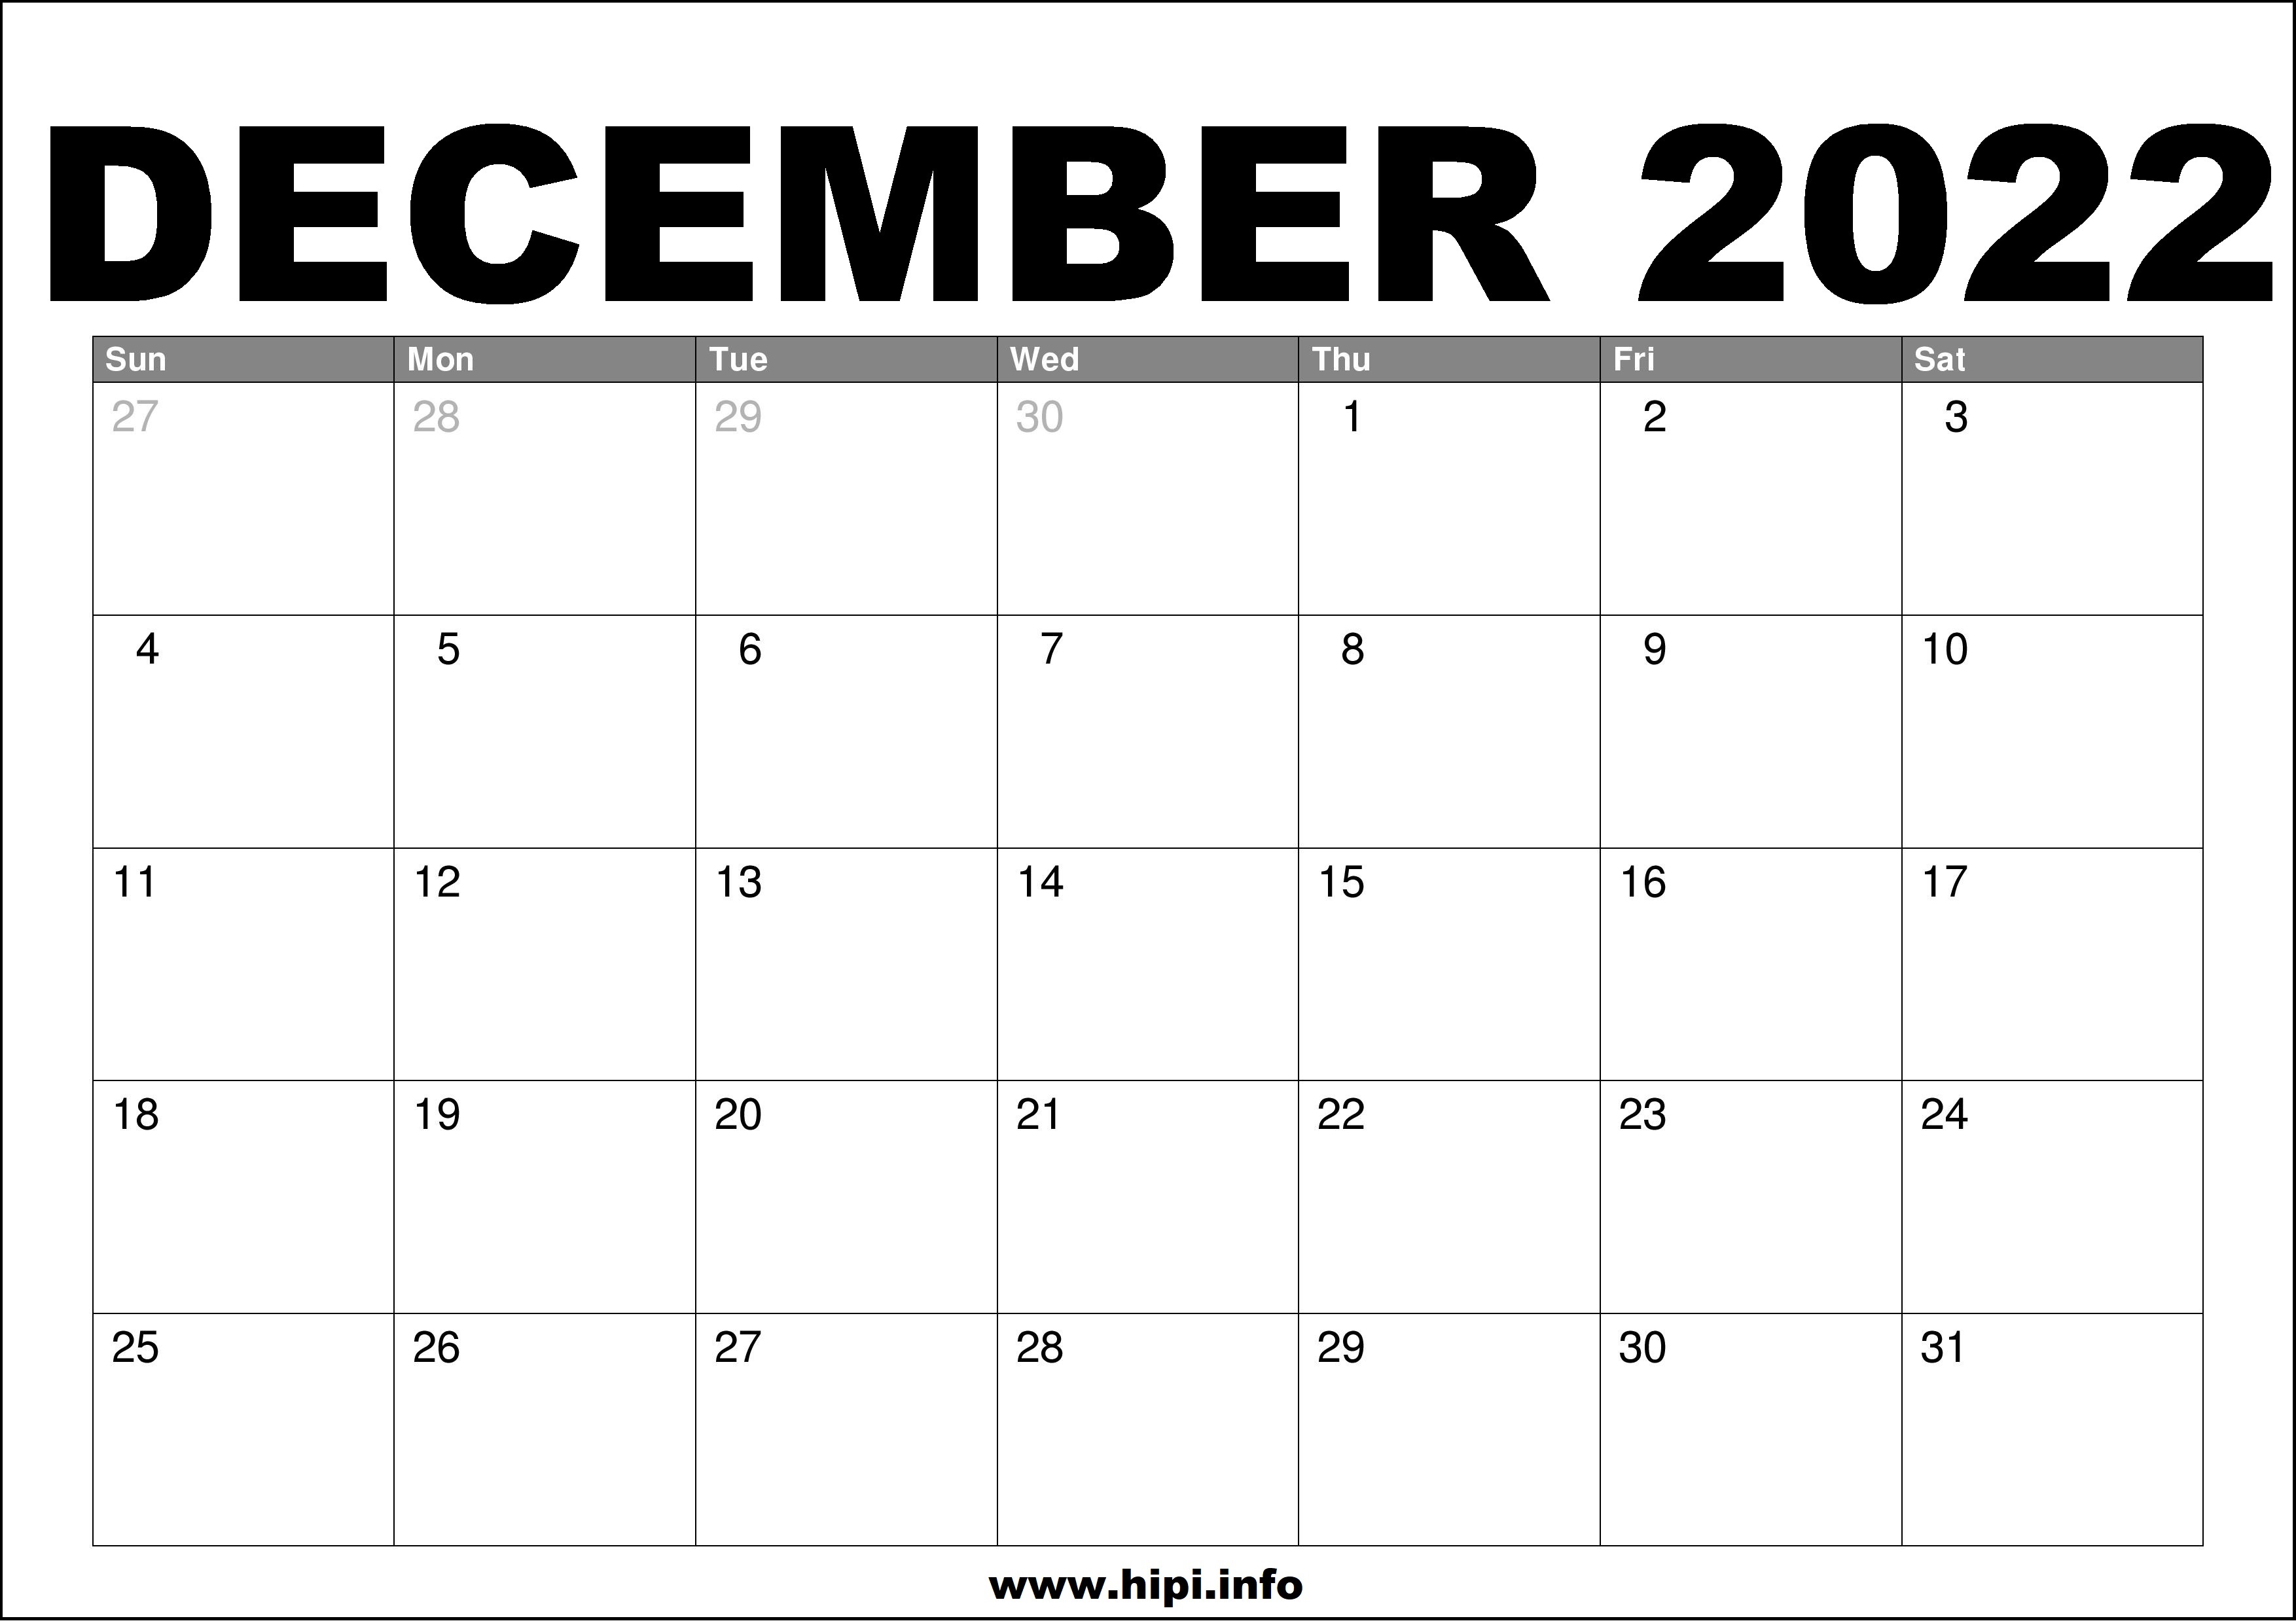 December Month Calendar 2022 December 2022 Calendar Printable Free - Hipi.info | Calendars Printable Free